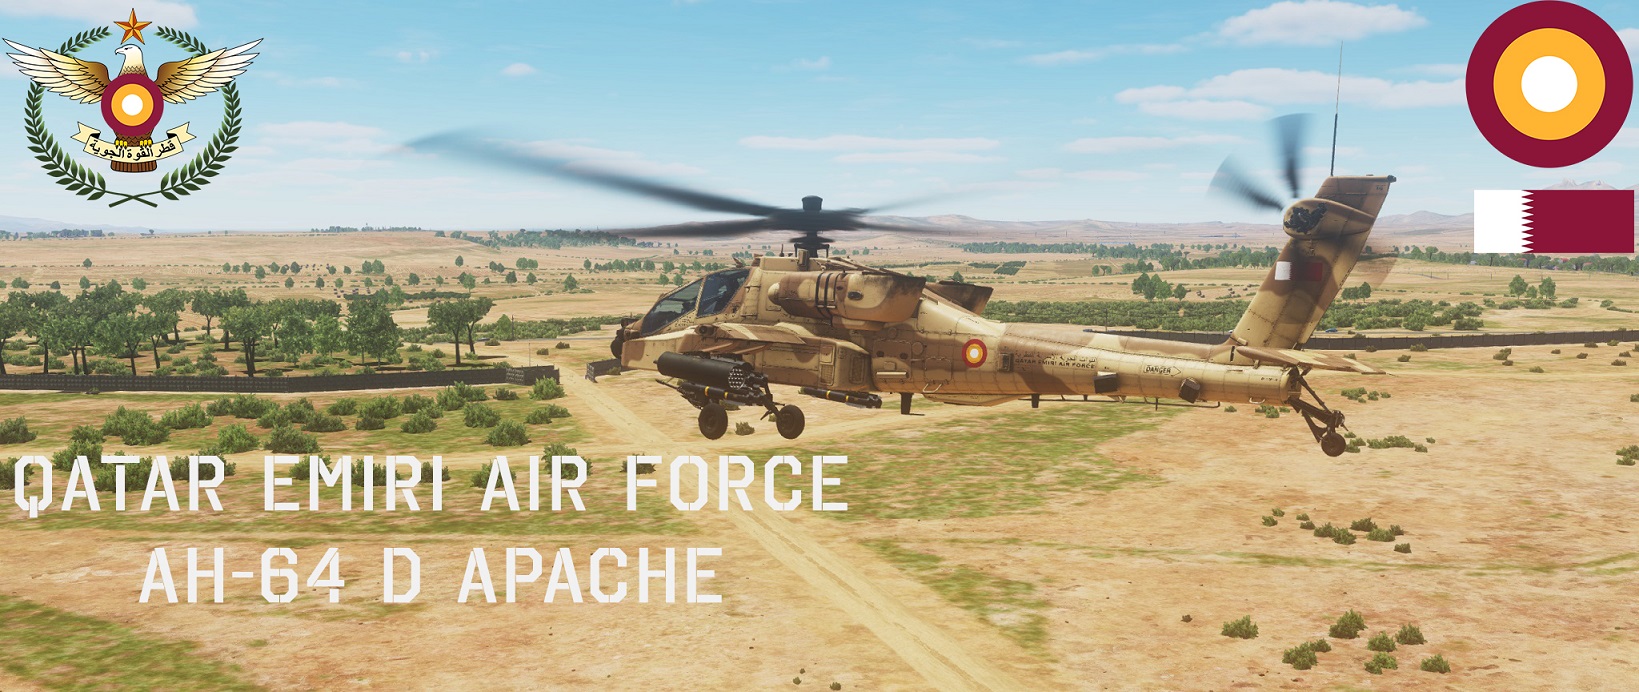 AH-64 D QATAR EMIRI AIR FORCE